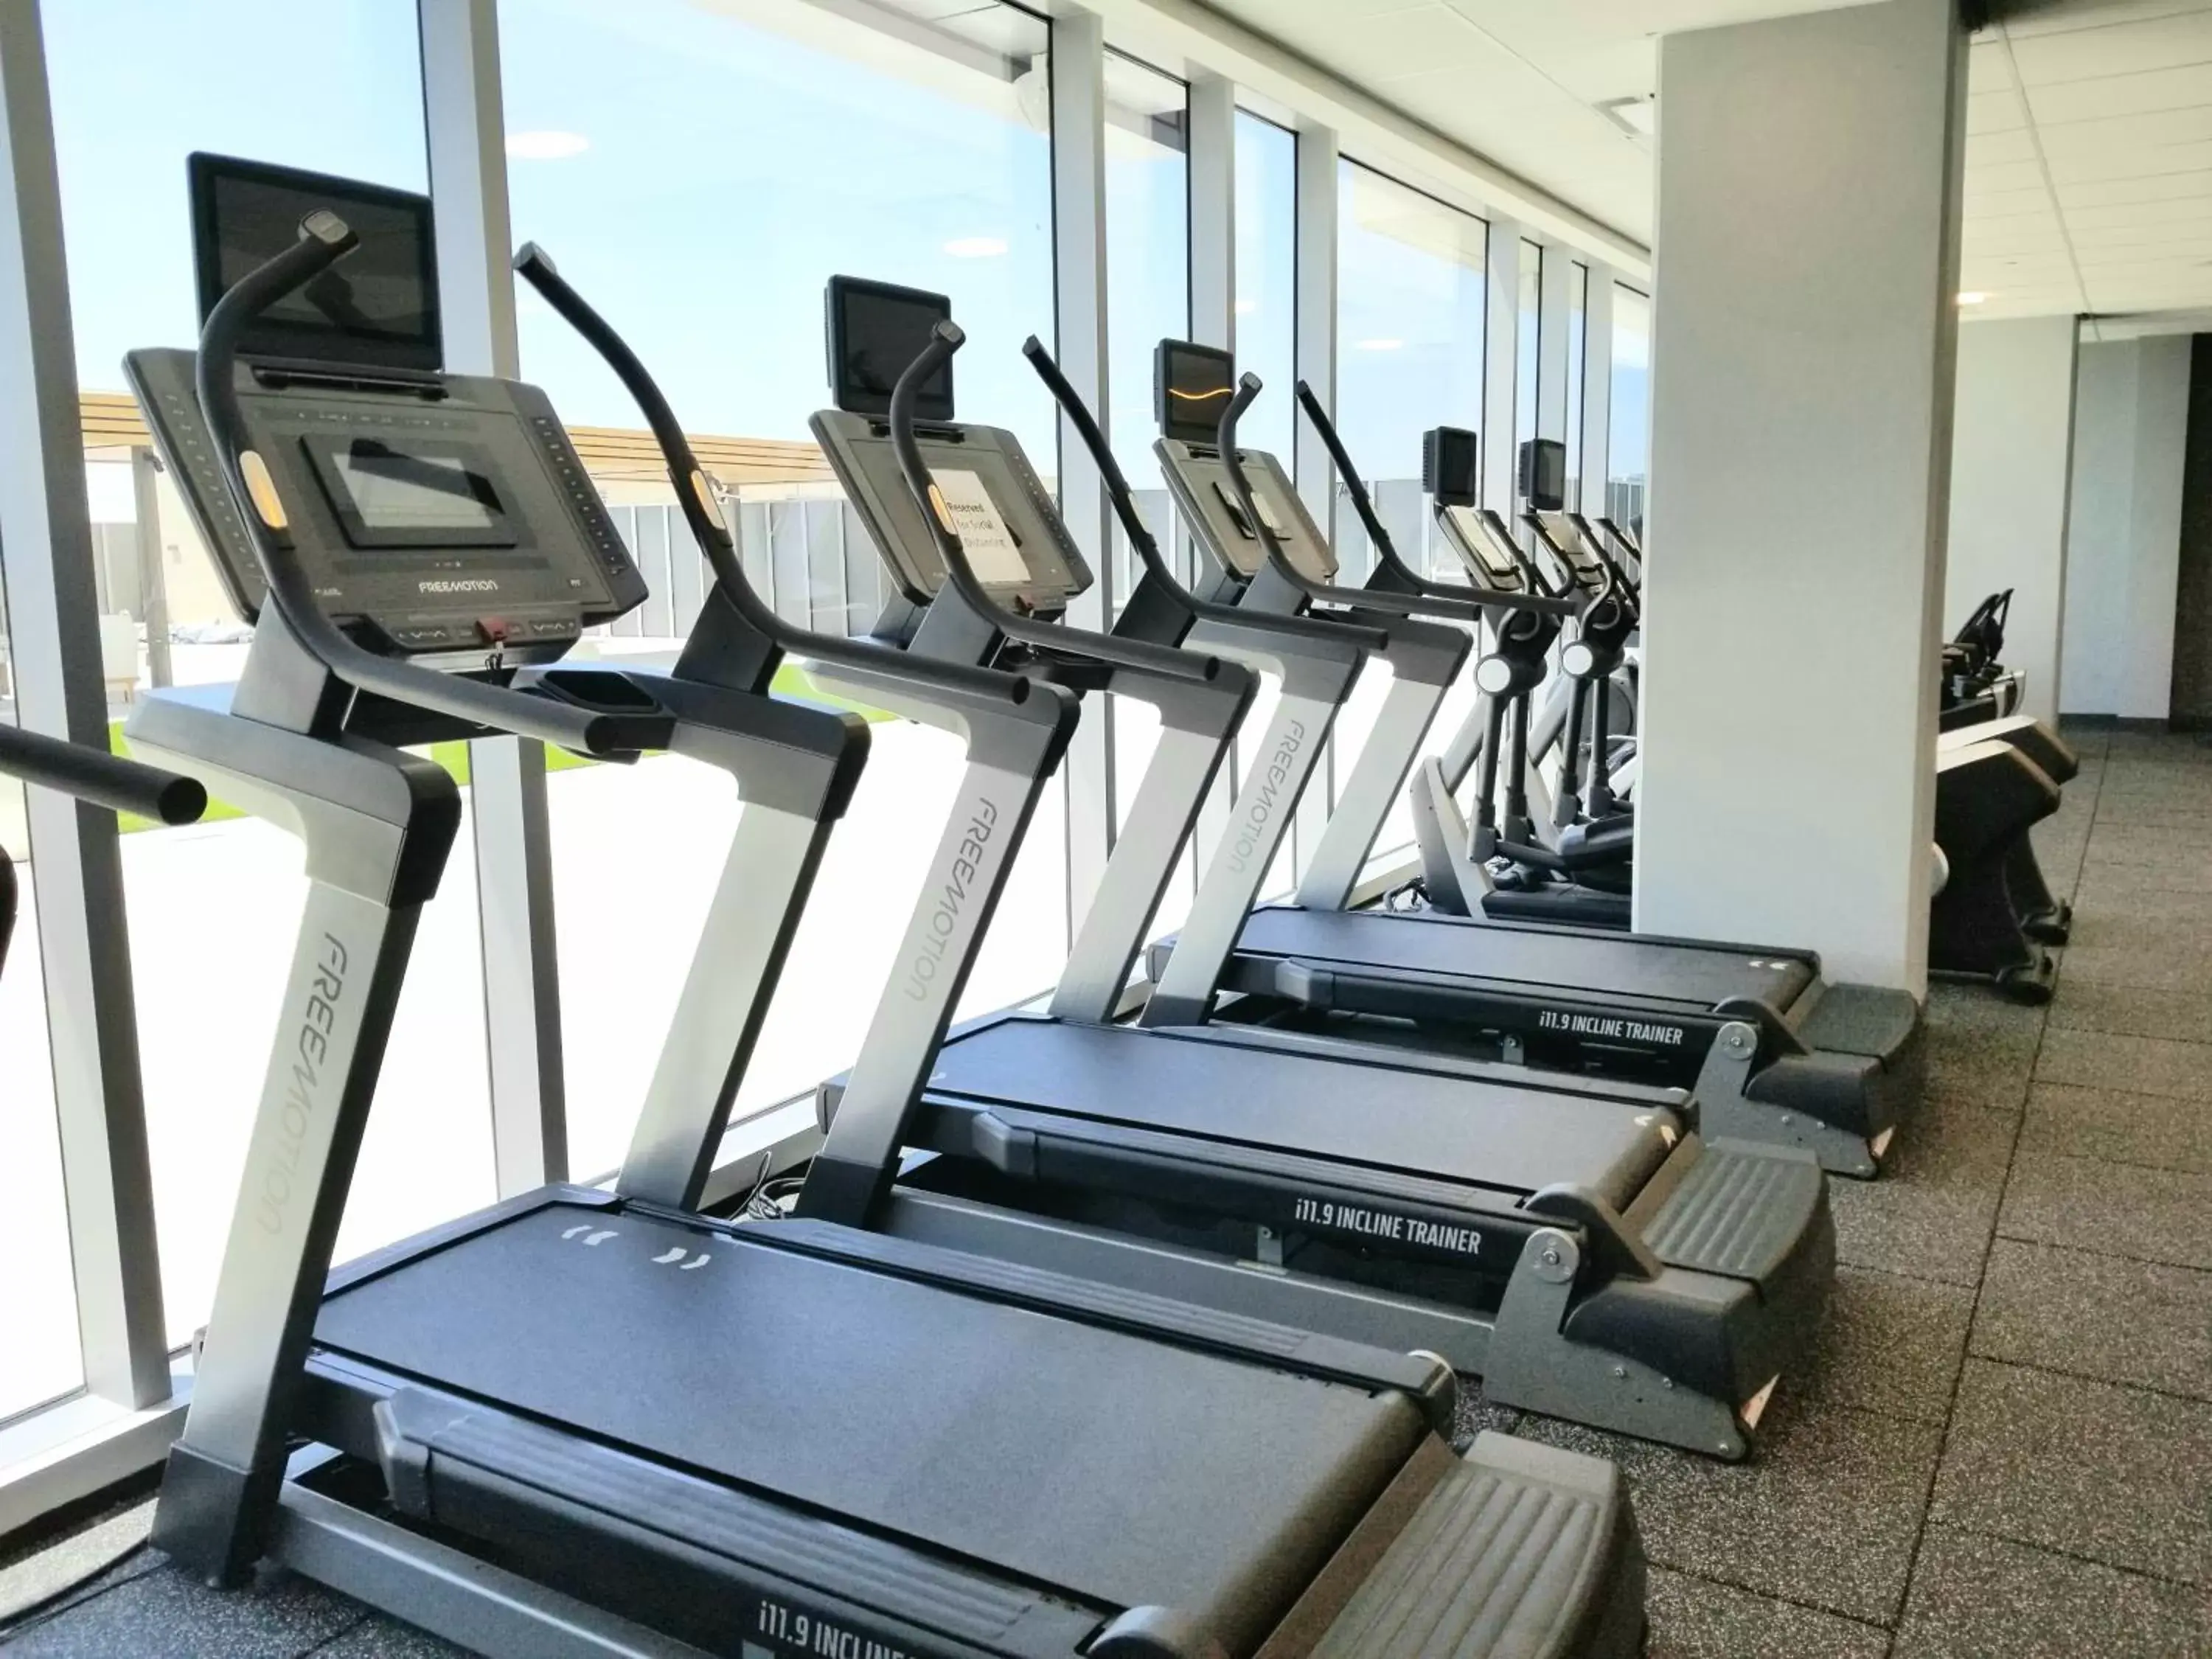 Fitness centre/facilities, Fitness Center/Facilities in Hyatt Regency Frisco-Dallas